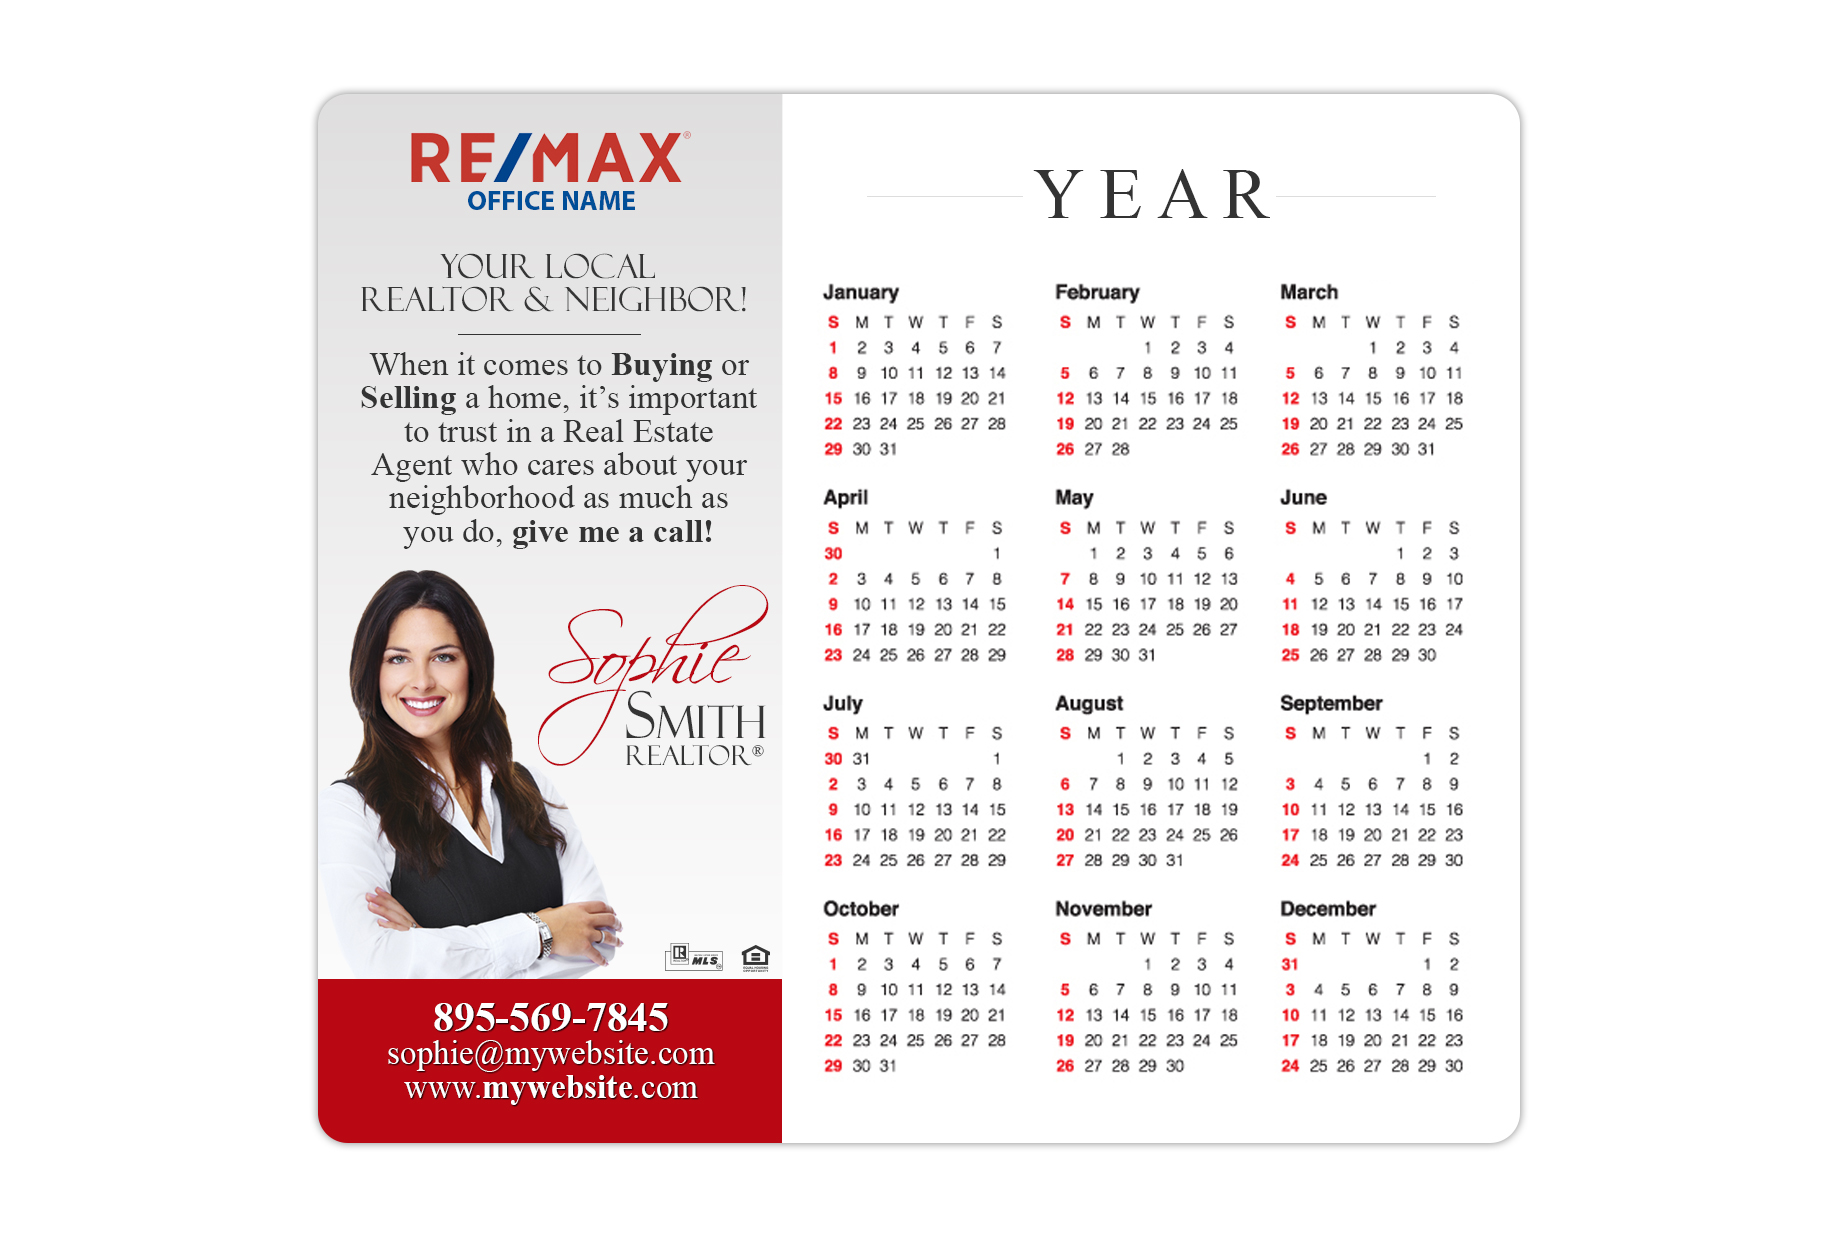 Remax Calendar Magnets | Remax Calendar Magnet Templates, Remax Calendar Magnet Designs, Remax Calendar Magnet Printing, Remax Calendar Magnet Ideas